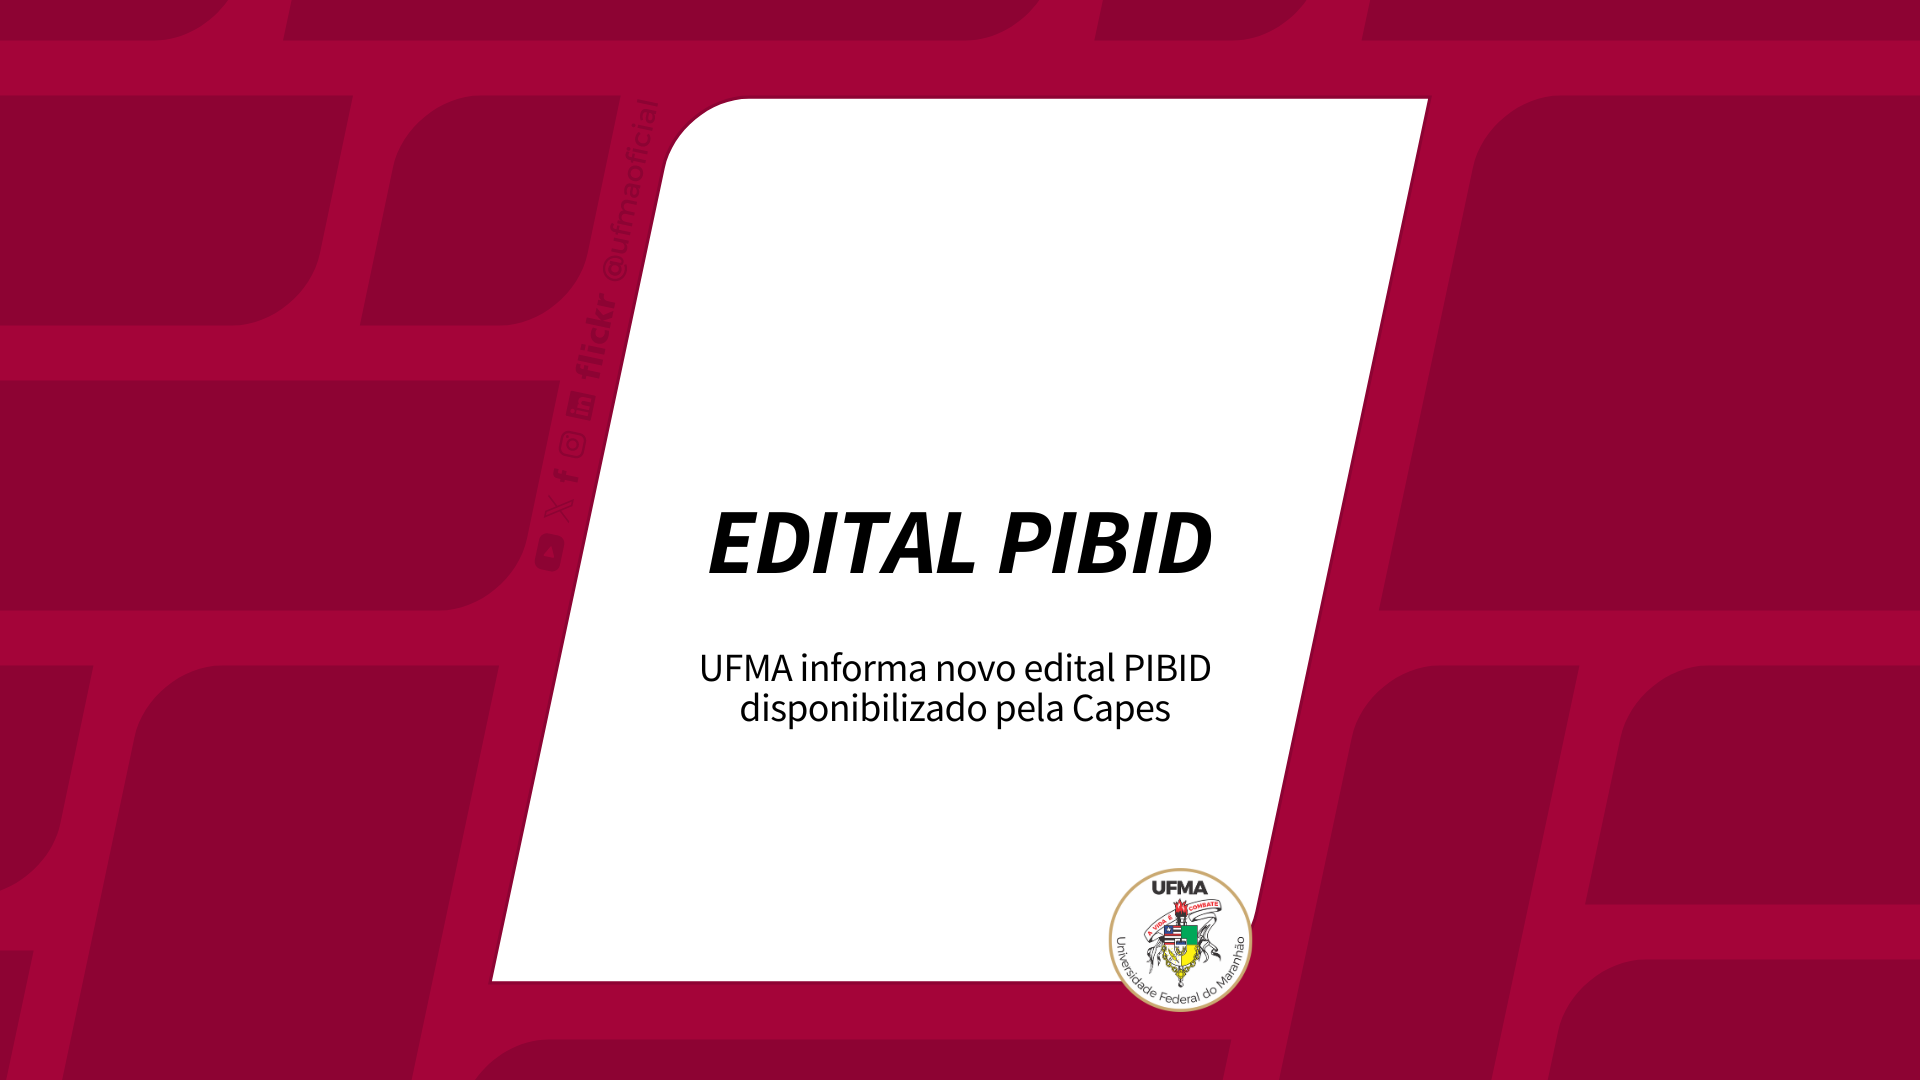 UFMA informa novo edital PIBID disponibilizado pela Capes